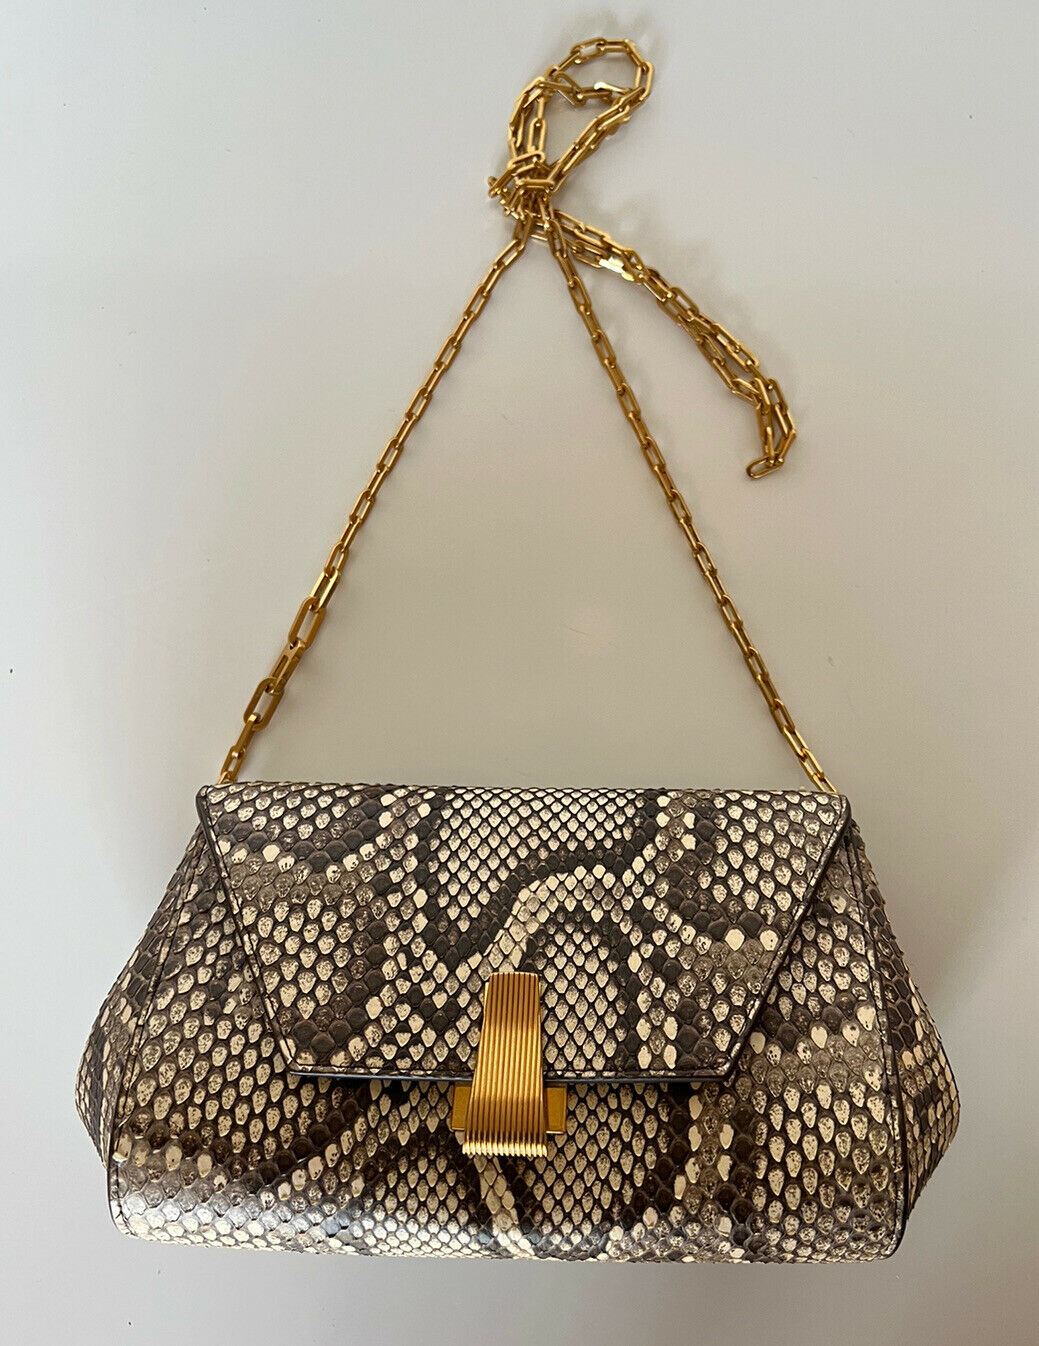 NWT $2550 Bottega Veneta Python Leather Chain Strap Mini Bag 608798 Italy